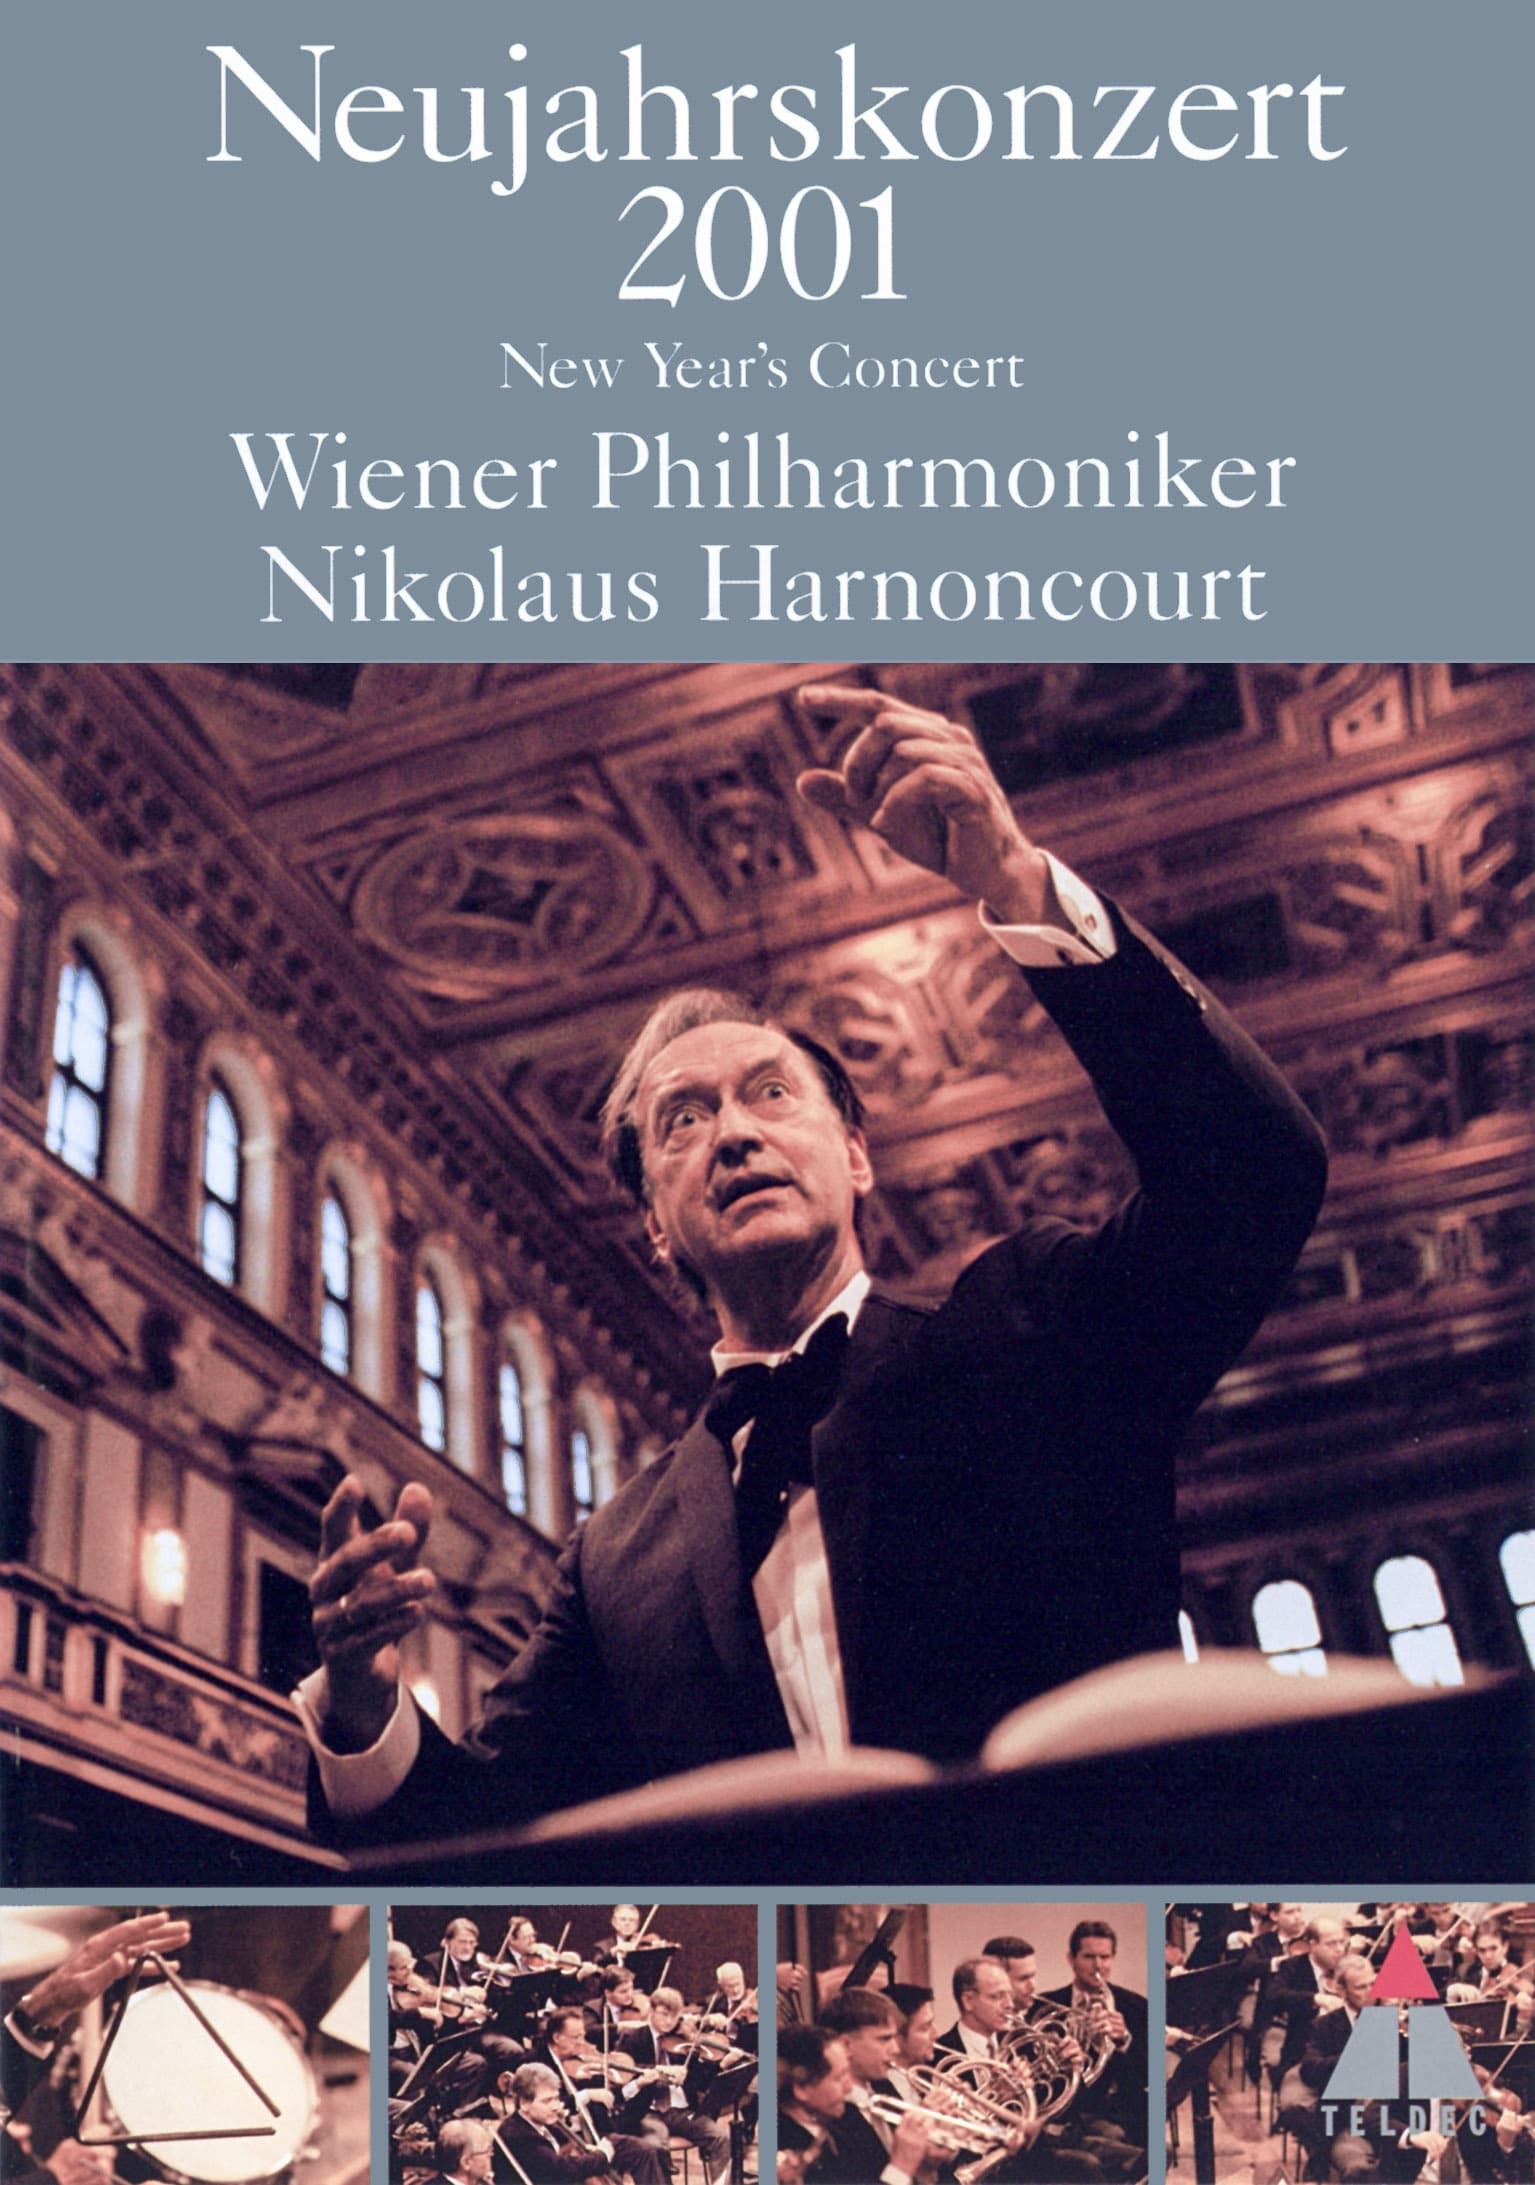 Neujahrskonzert der Wiener Philharmoniker 2001